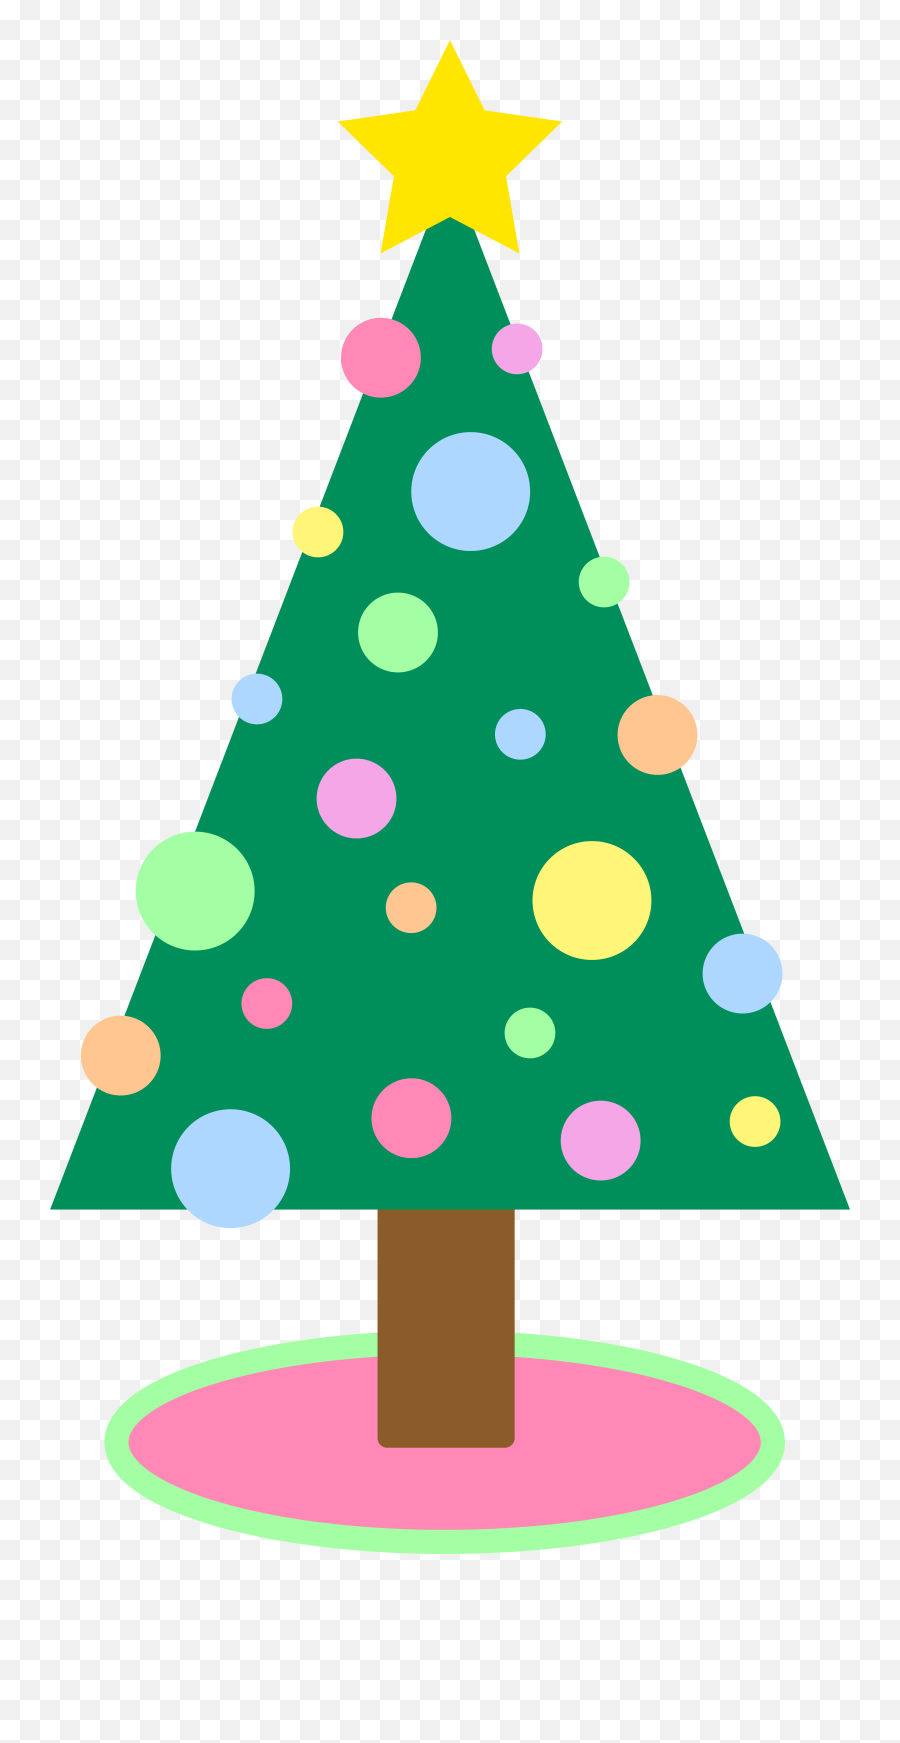 Free Xmas Pics Free Download Free Clip Art Free Clip Art - Christmas Tree Clipart Emoji,How To Make A Christmas Tree Emoji